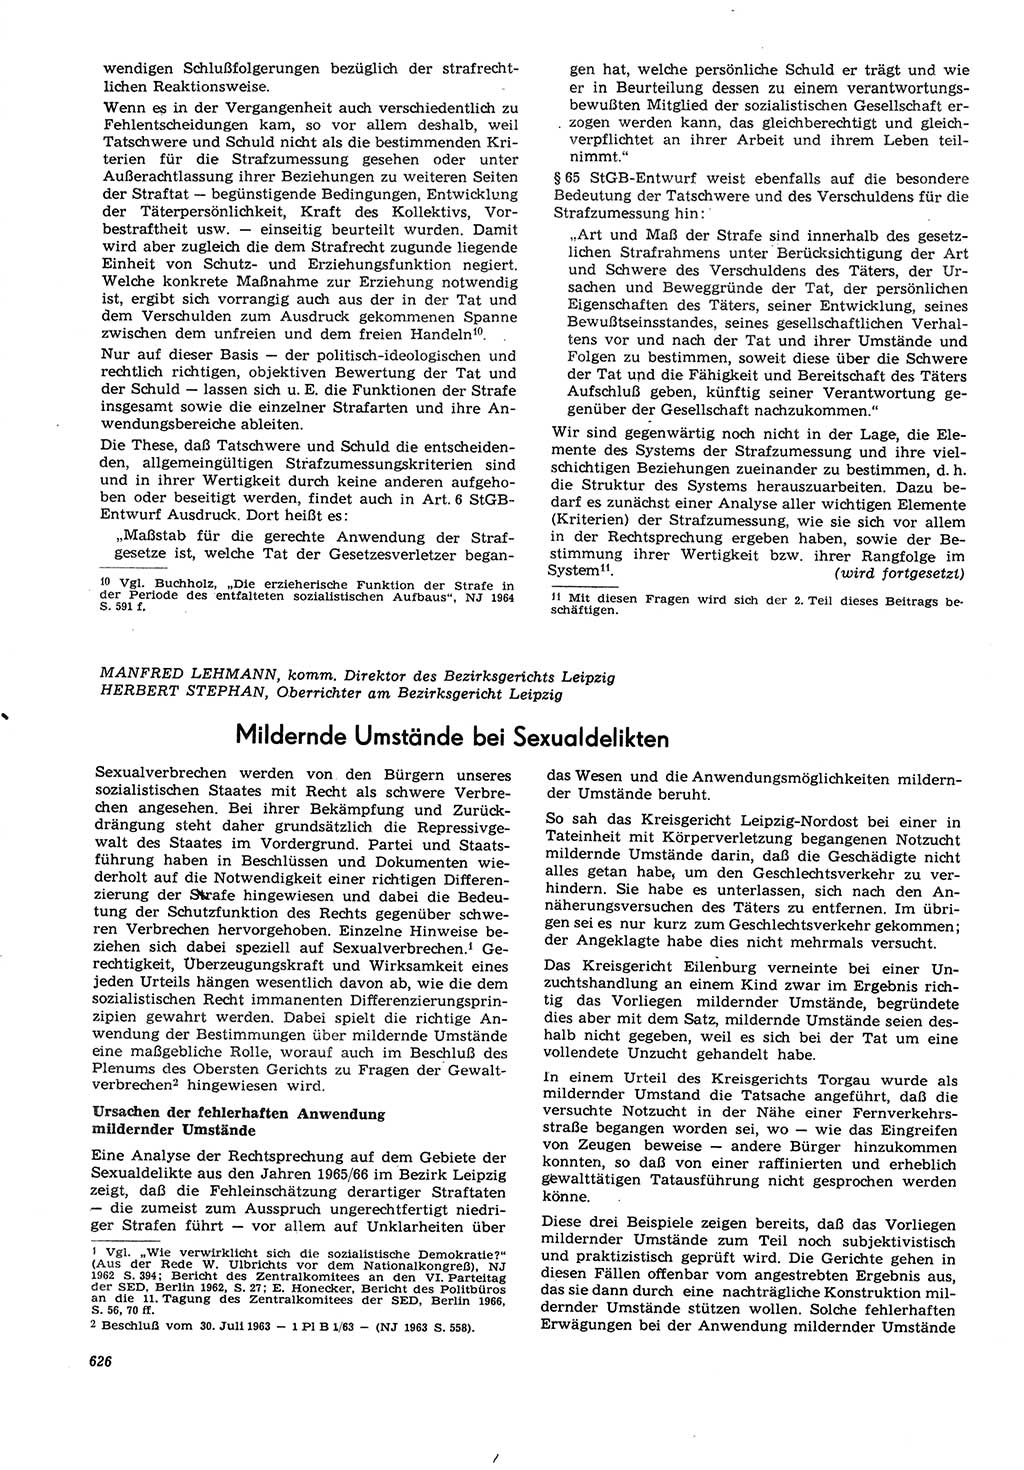 Neue Justiz (NJ), Zeitschrift für Recht und Rechtswissenschaft [Deutsche Demokratische Republik (DDR)], 21. Jahrgang 1967, Seite 626 (NJ DDR 1967, S. 626)